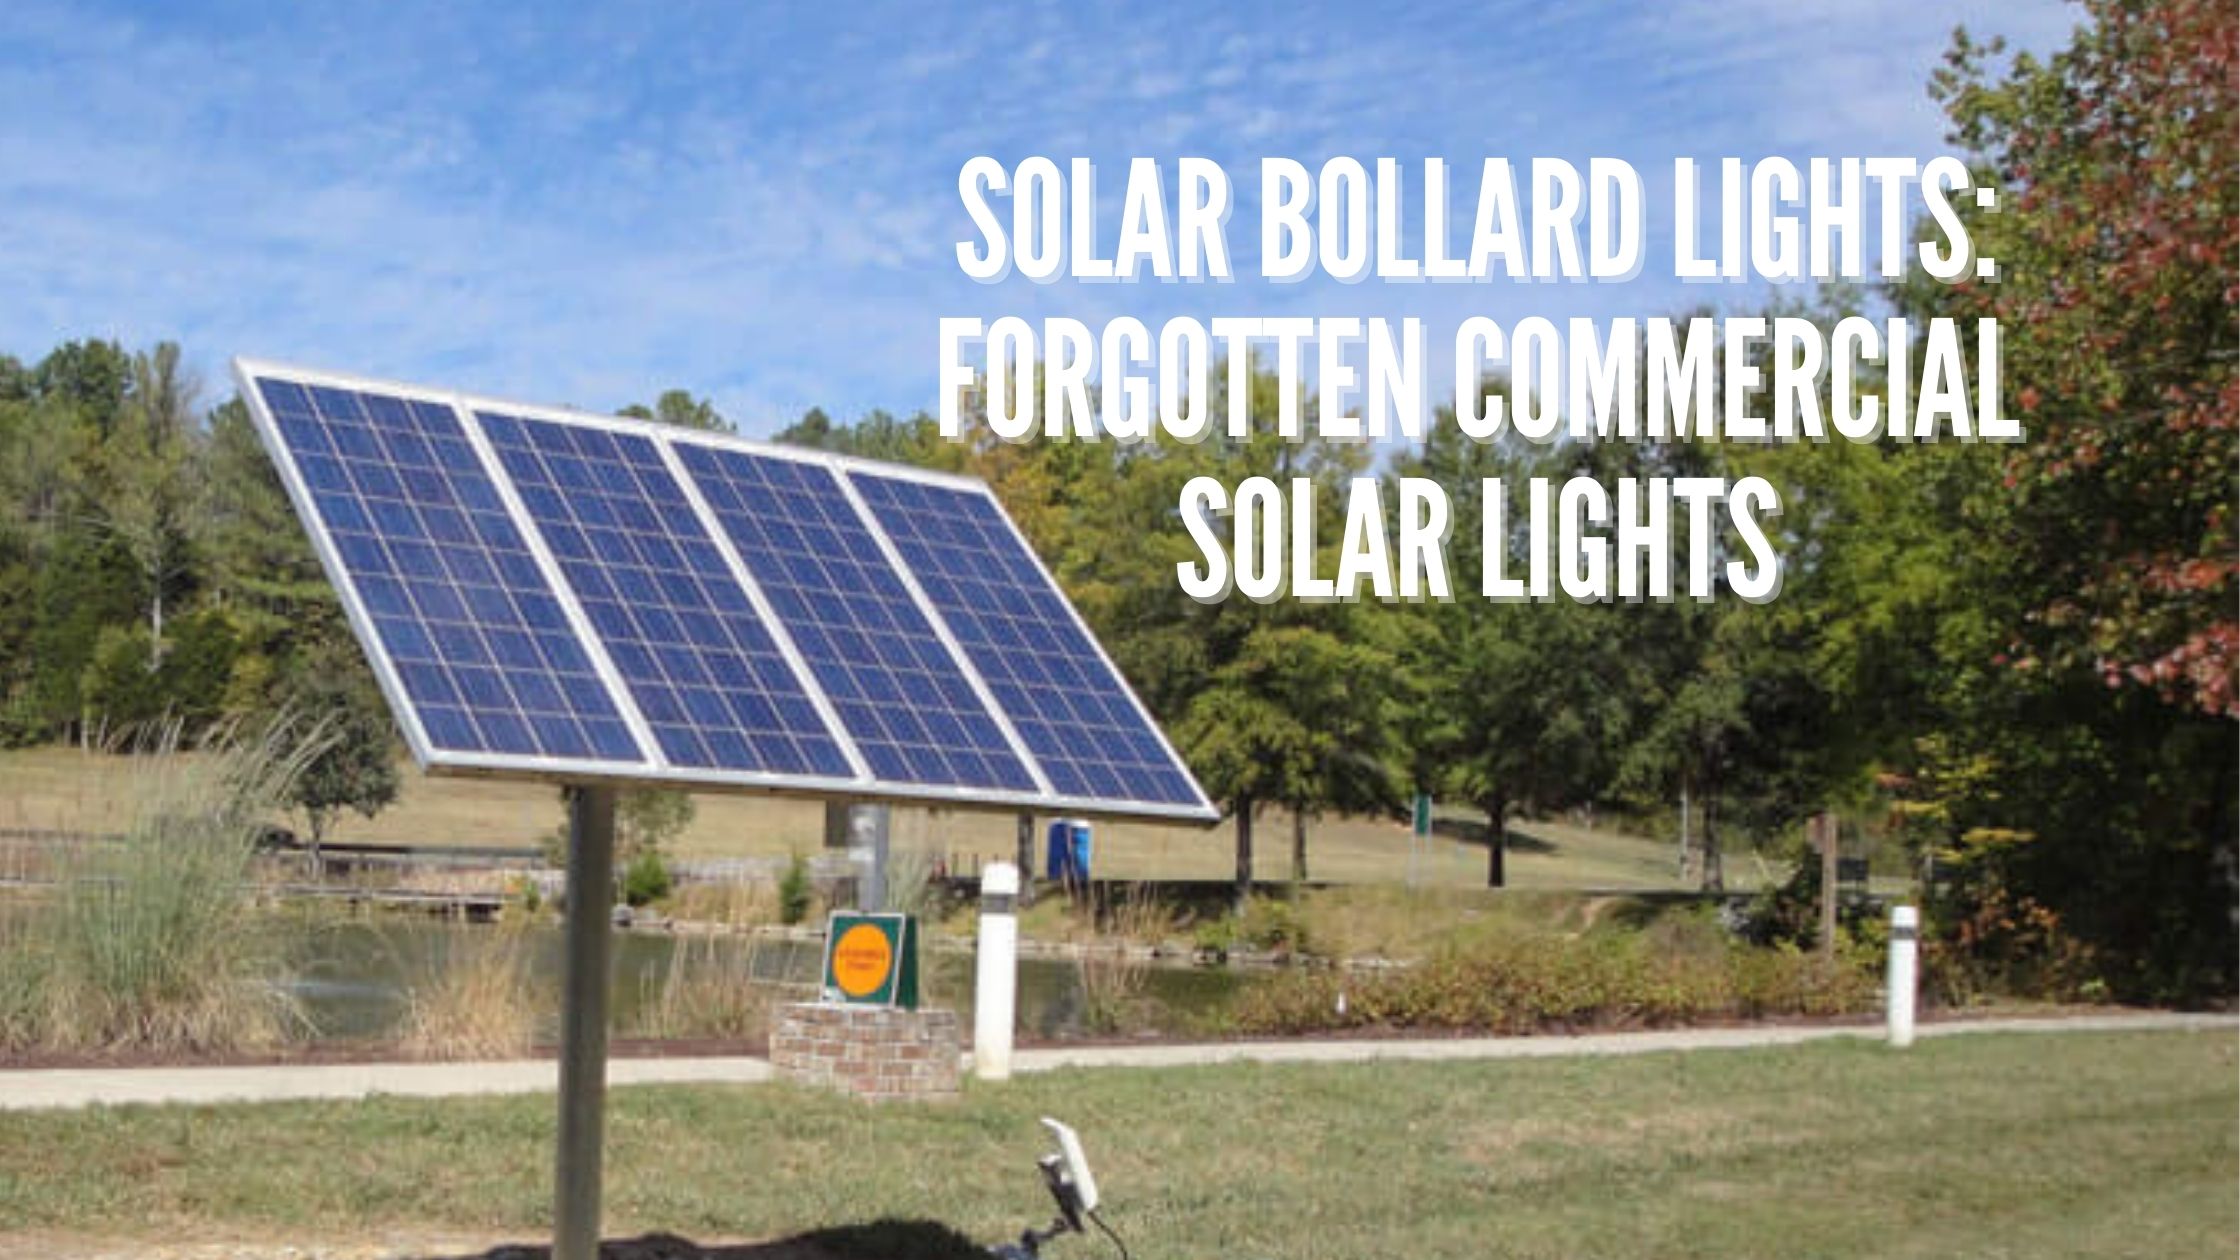 Solar Bollard Lights Forgotten Commercial Solar Lights